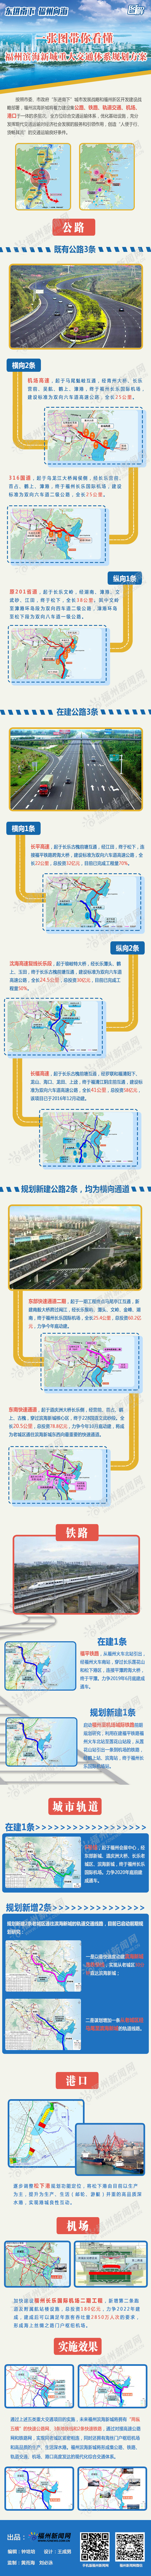 一张图带你看懂福州滨海新城重大交通体系规划方案